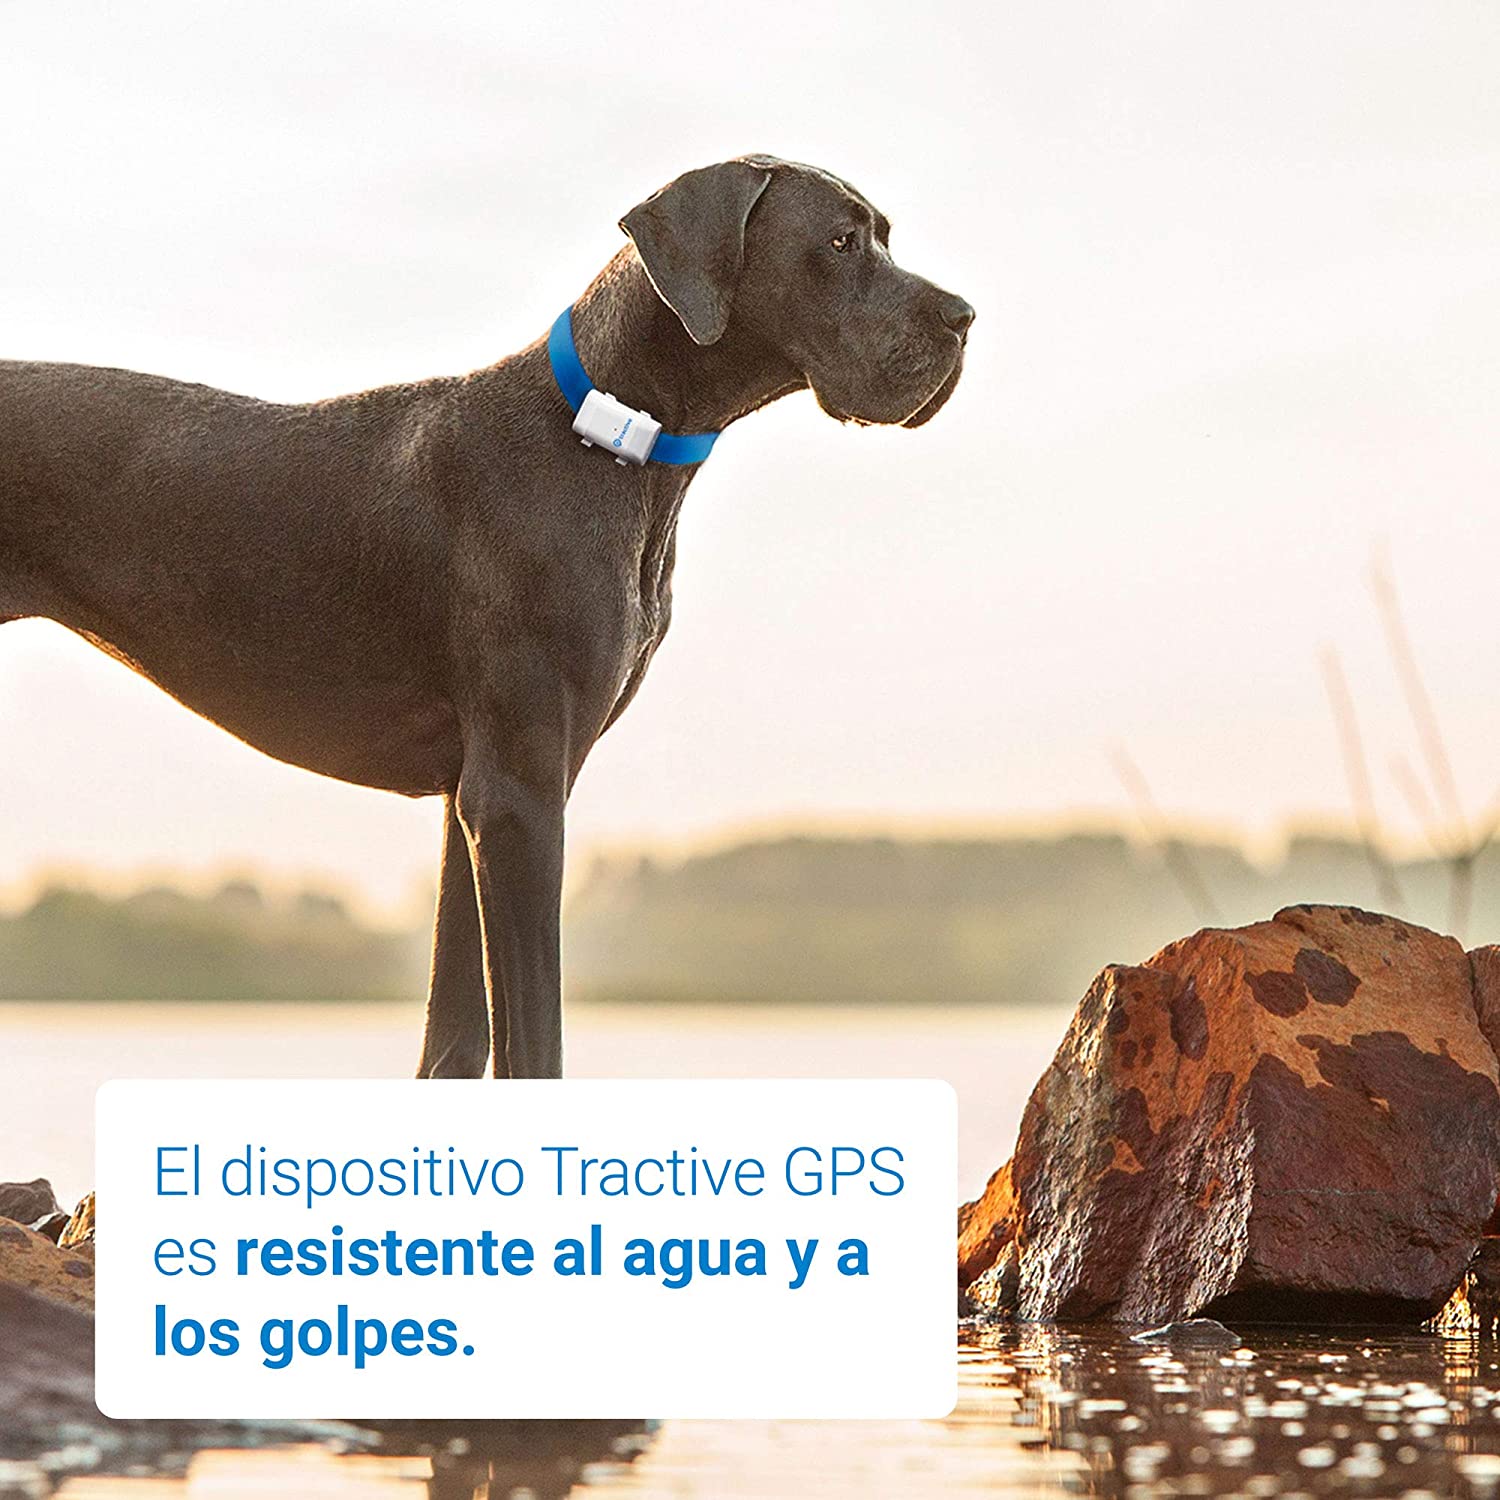  Tractive Localizador GPS XL para perros - batería dura hasta 6 semanas, rango ilimitado 